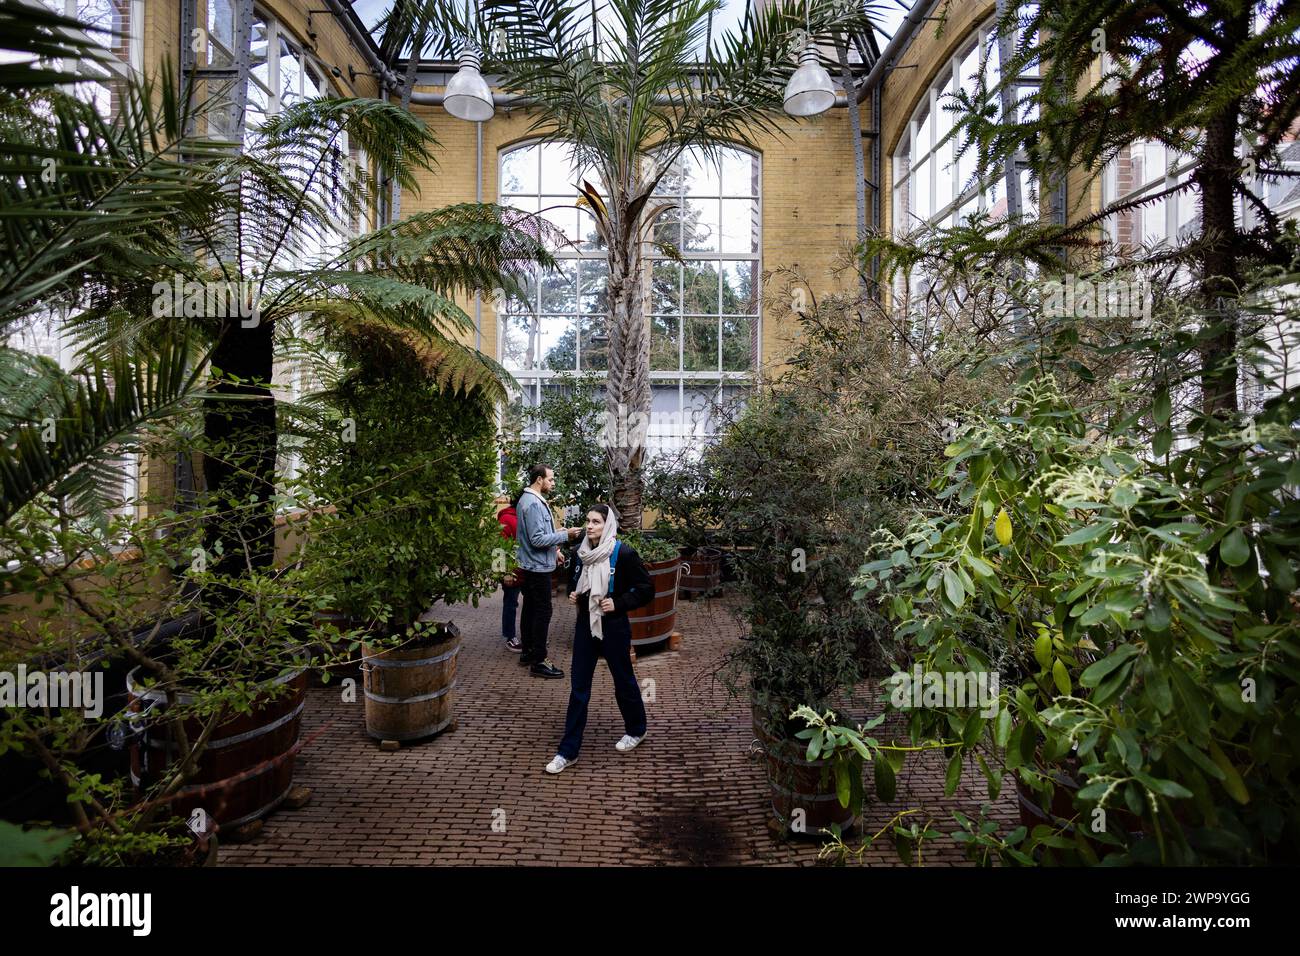 AMSTERDAM - der Hortus Botanicus Amsterdam. Der botanische Garten existiert seit dem 17. Jahrhundert und enthält mehr als sechstausend tropische und einheimische Bäume und Pflanzen. ANP RAMON VAN FLYMEN niederlande aus - belgien aus Stockfoto